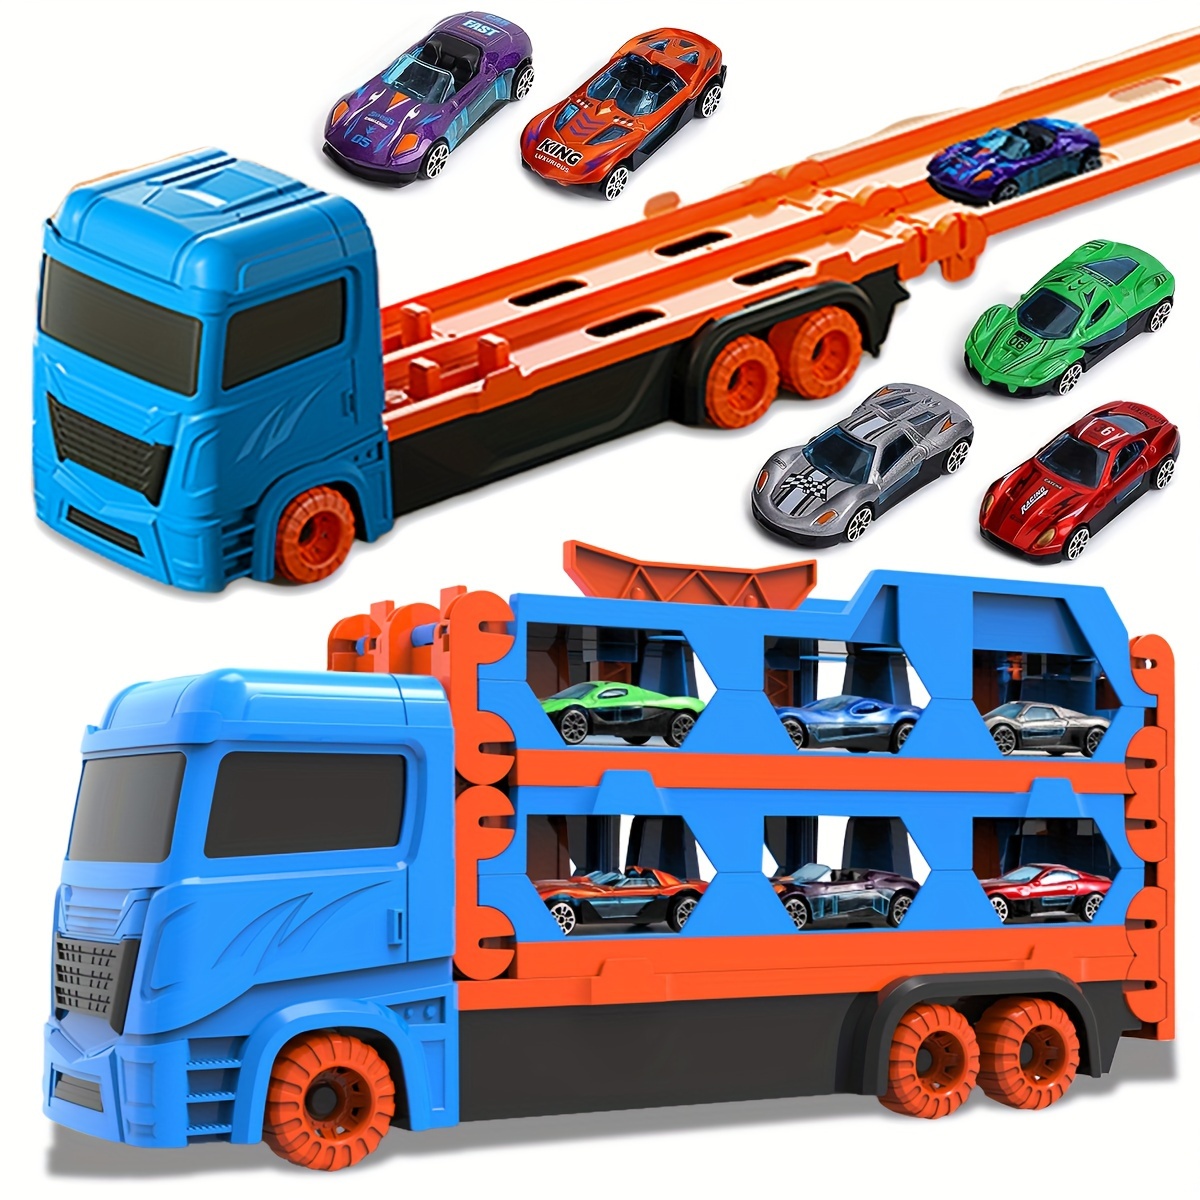 Spielzeug Transportieren - Kostenlose Rückgabe Innerhalb Von 90